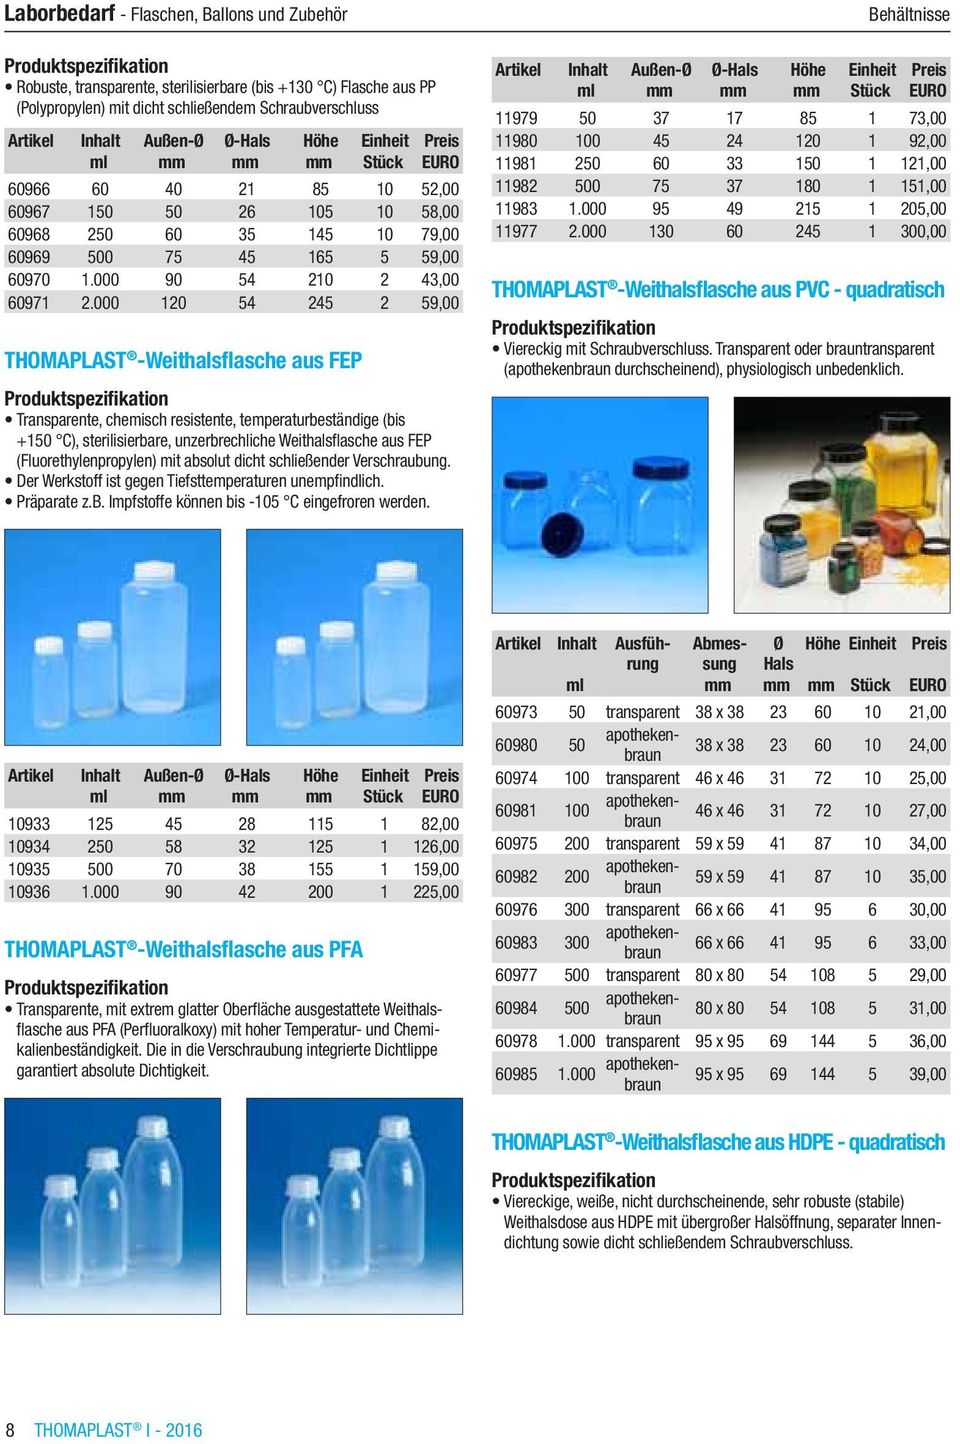 000 120 54 245 2 59,00 THOMAPLAST -Weithalsflasche aus FEP Transparente, chemisch resistente, temperaturbeständige (bis +150 C), sterilisierbare, unzerbrechliche Weithalsflasche aus FEP